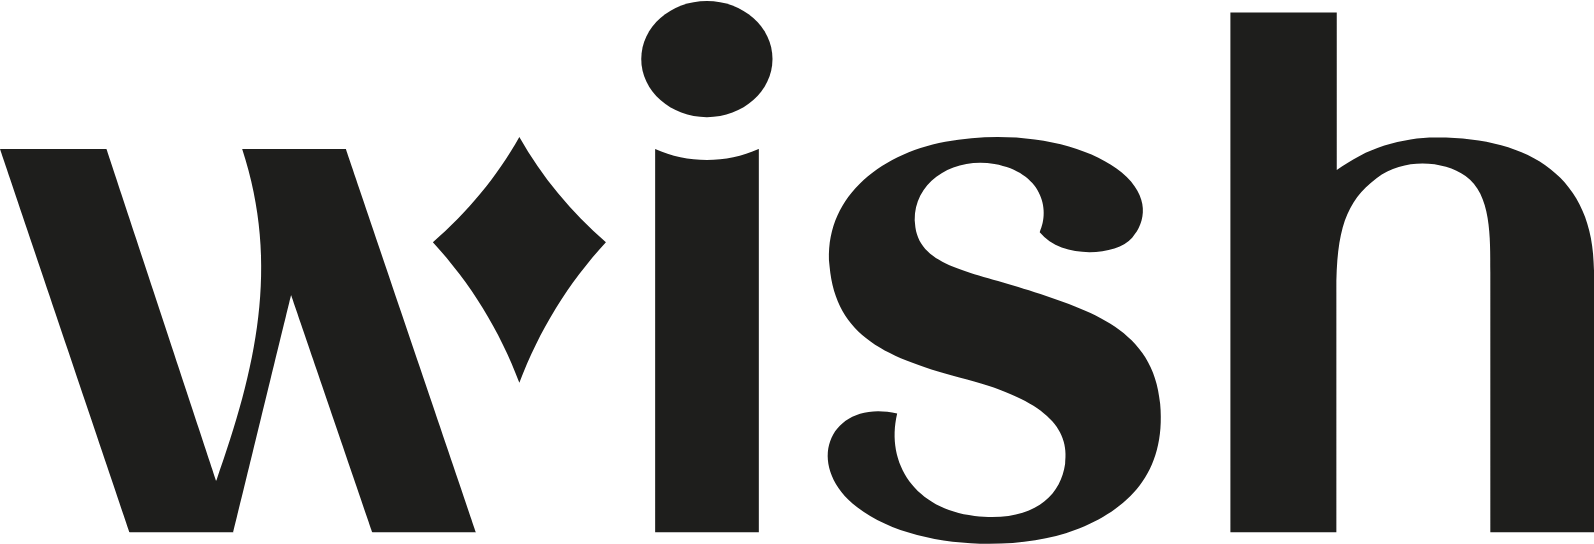 ContextLogic (wish.com) logo large (transparent PNG)